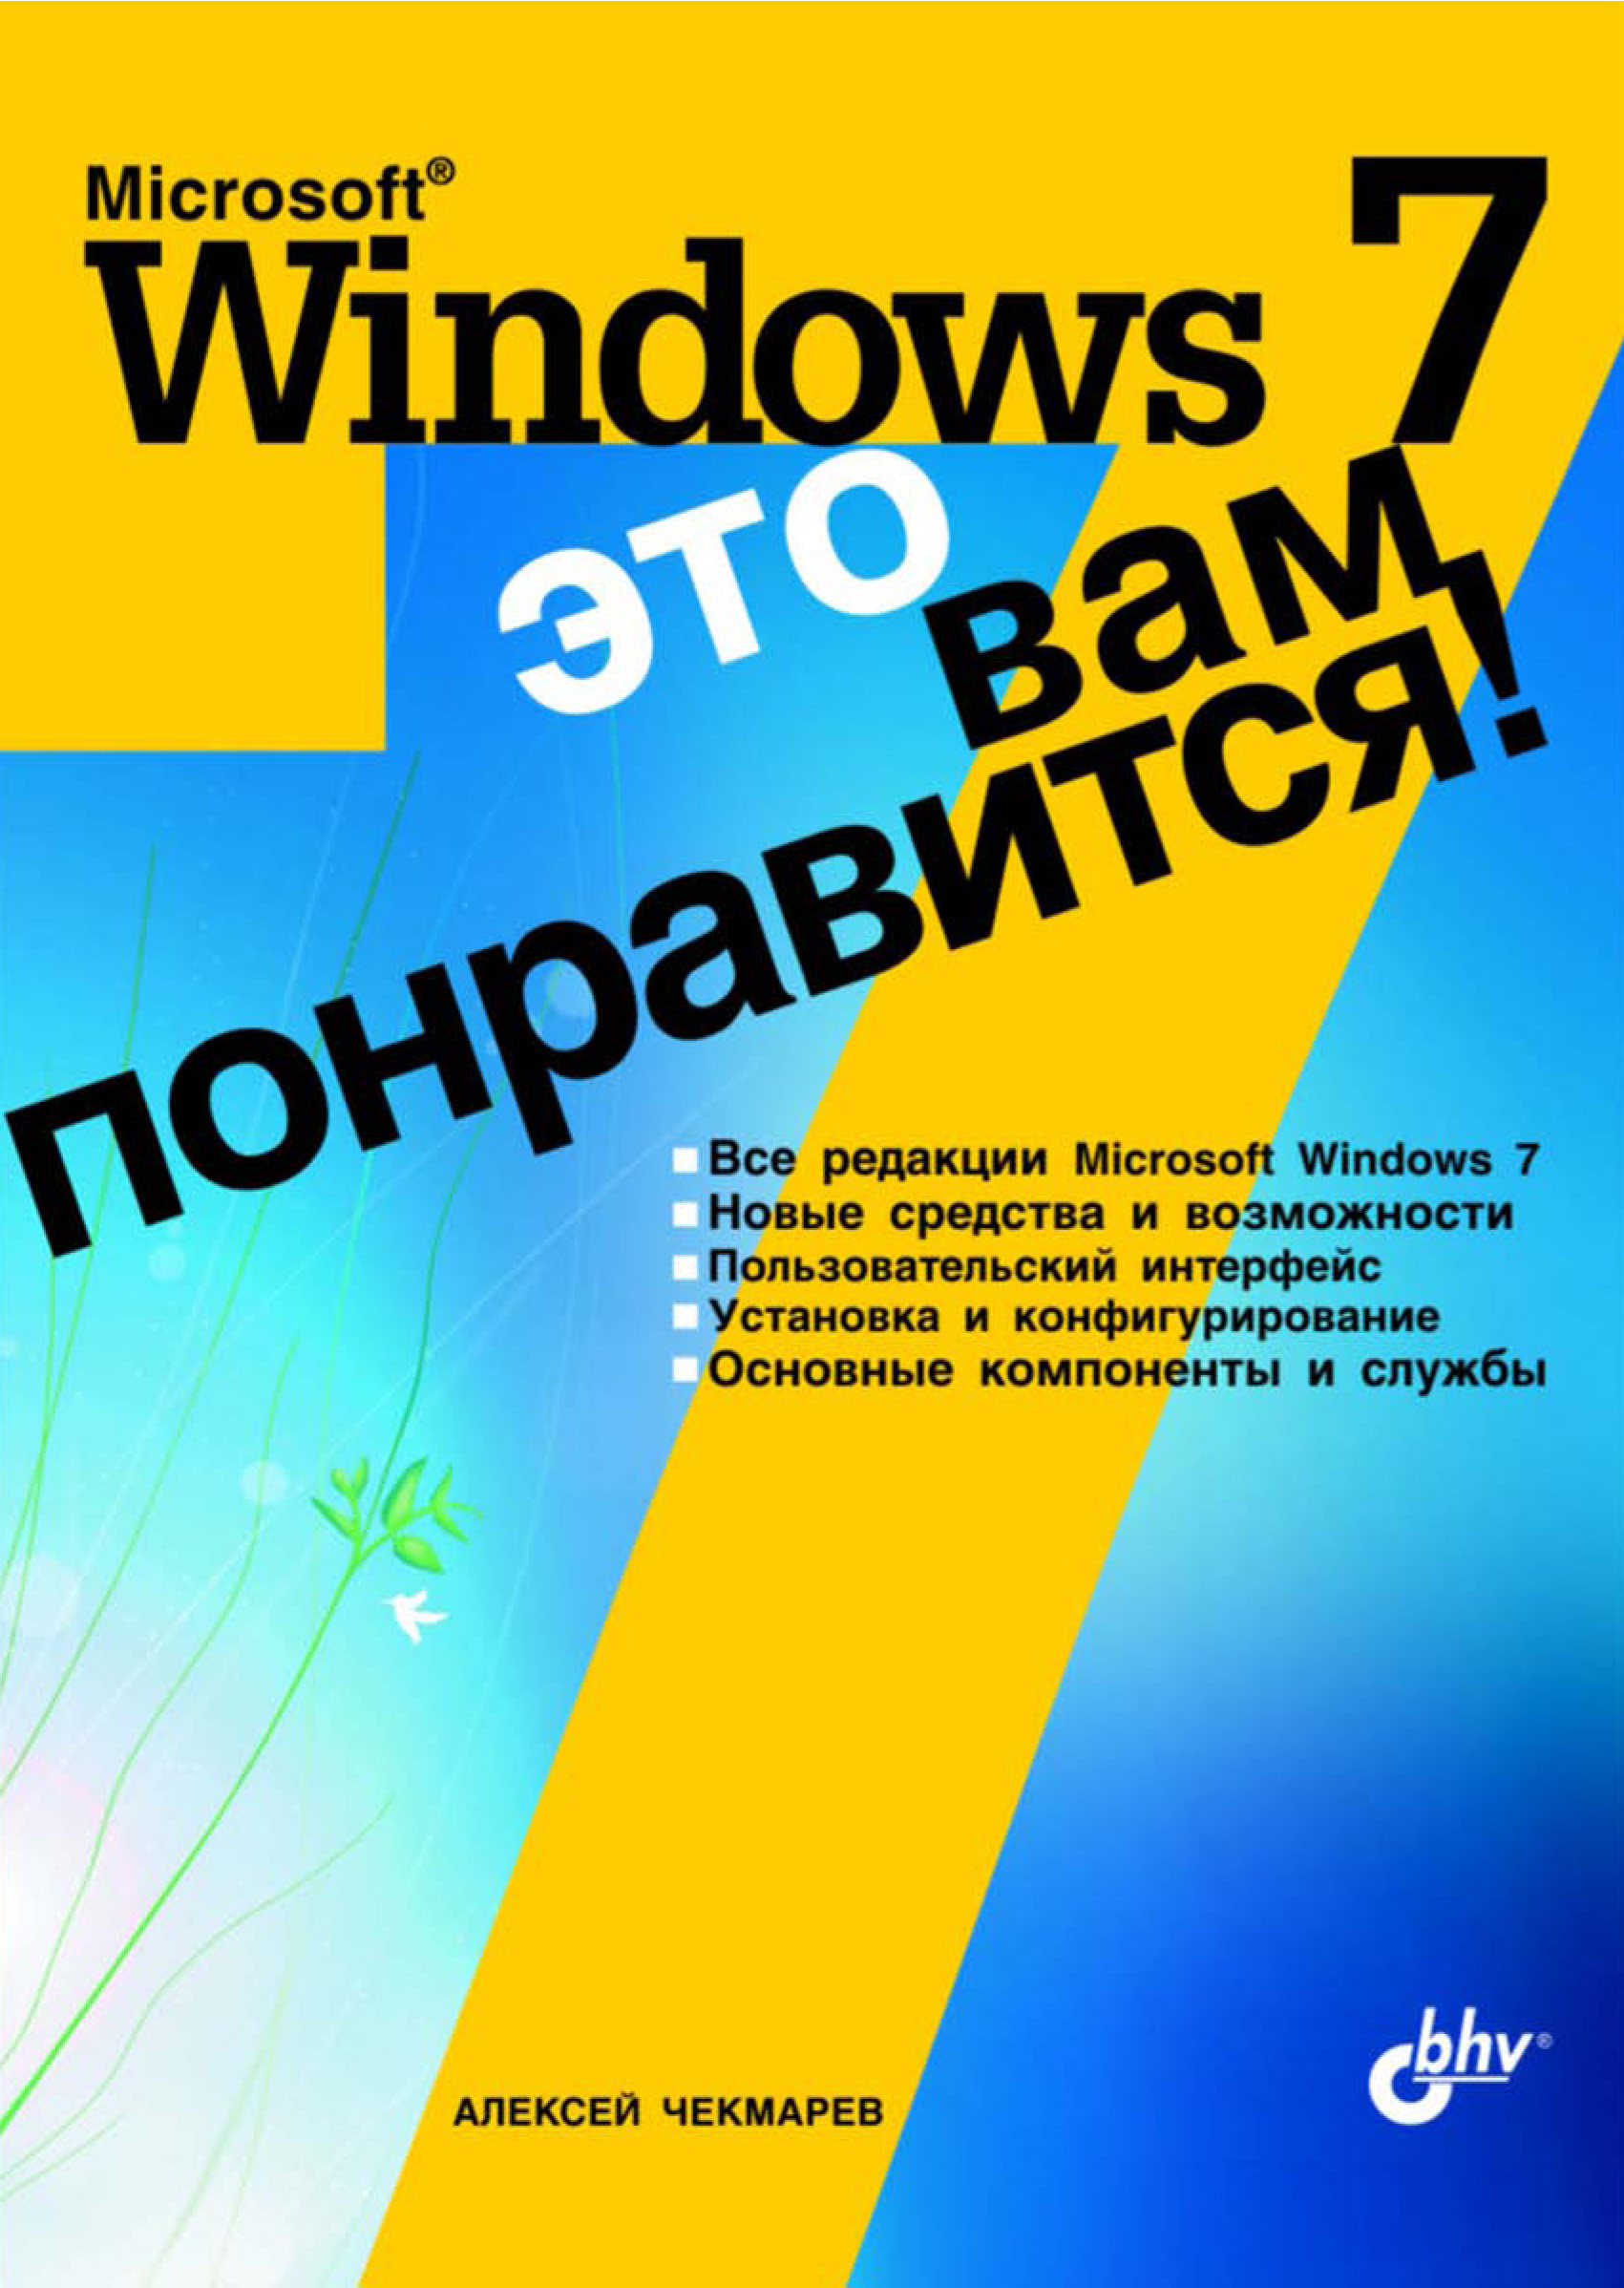 Microsoft Windows 7– это вам понравится!